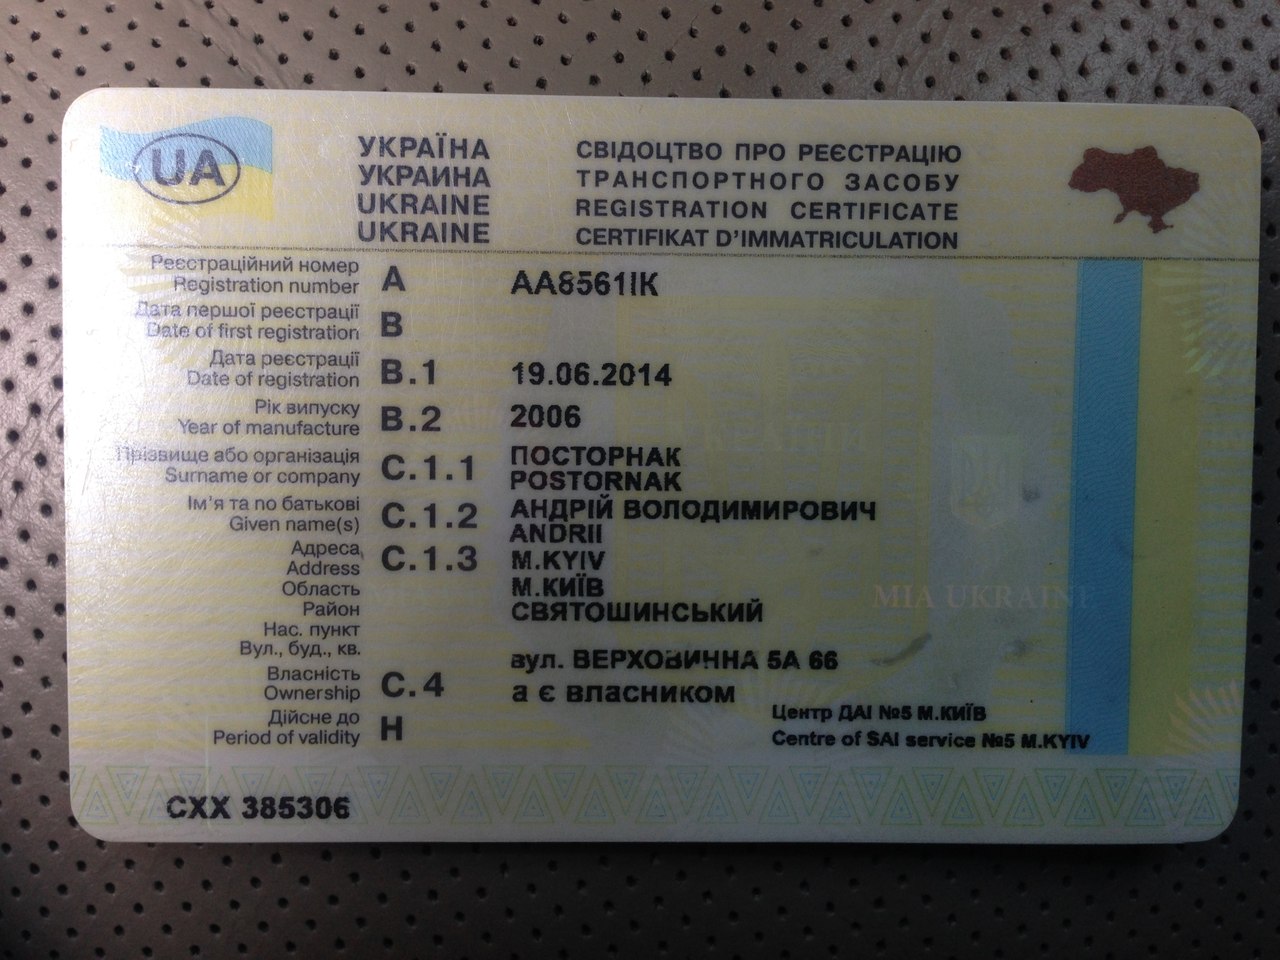 Водительские права, паспорт Украины, ВНЖ, ПМЖ, дипломы, автодокументы, свидетельства о рождении  - фотография